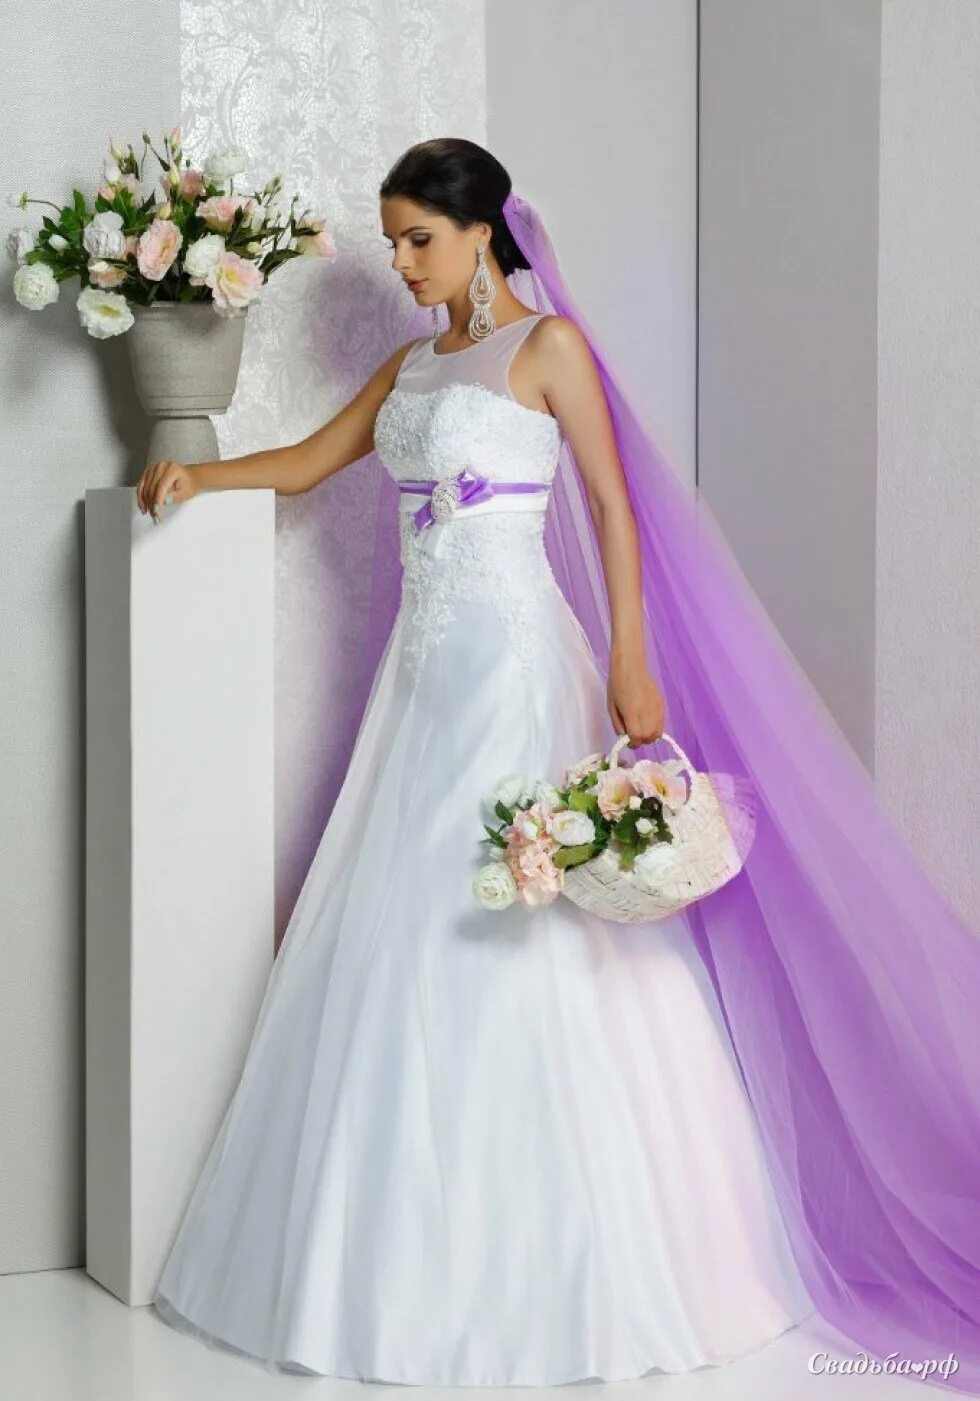 Белое фиолетовое платье. Свадебное платье белое с фиолетовым. Свадебное платье с сиреневым элементом. Свадебное платье с лавандовым оттенком. Невеста в сиреневом платье.